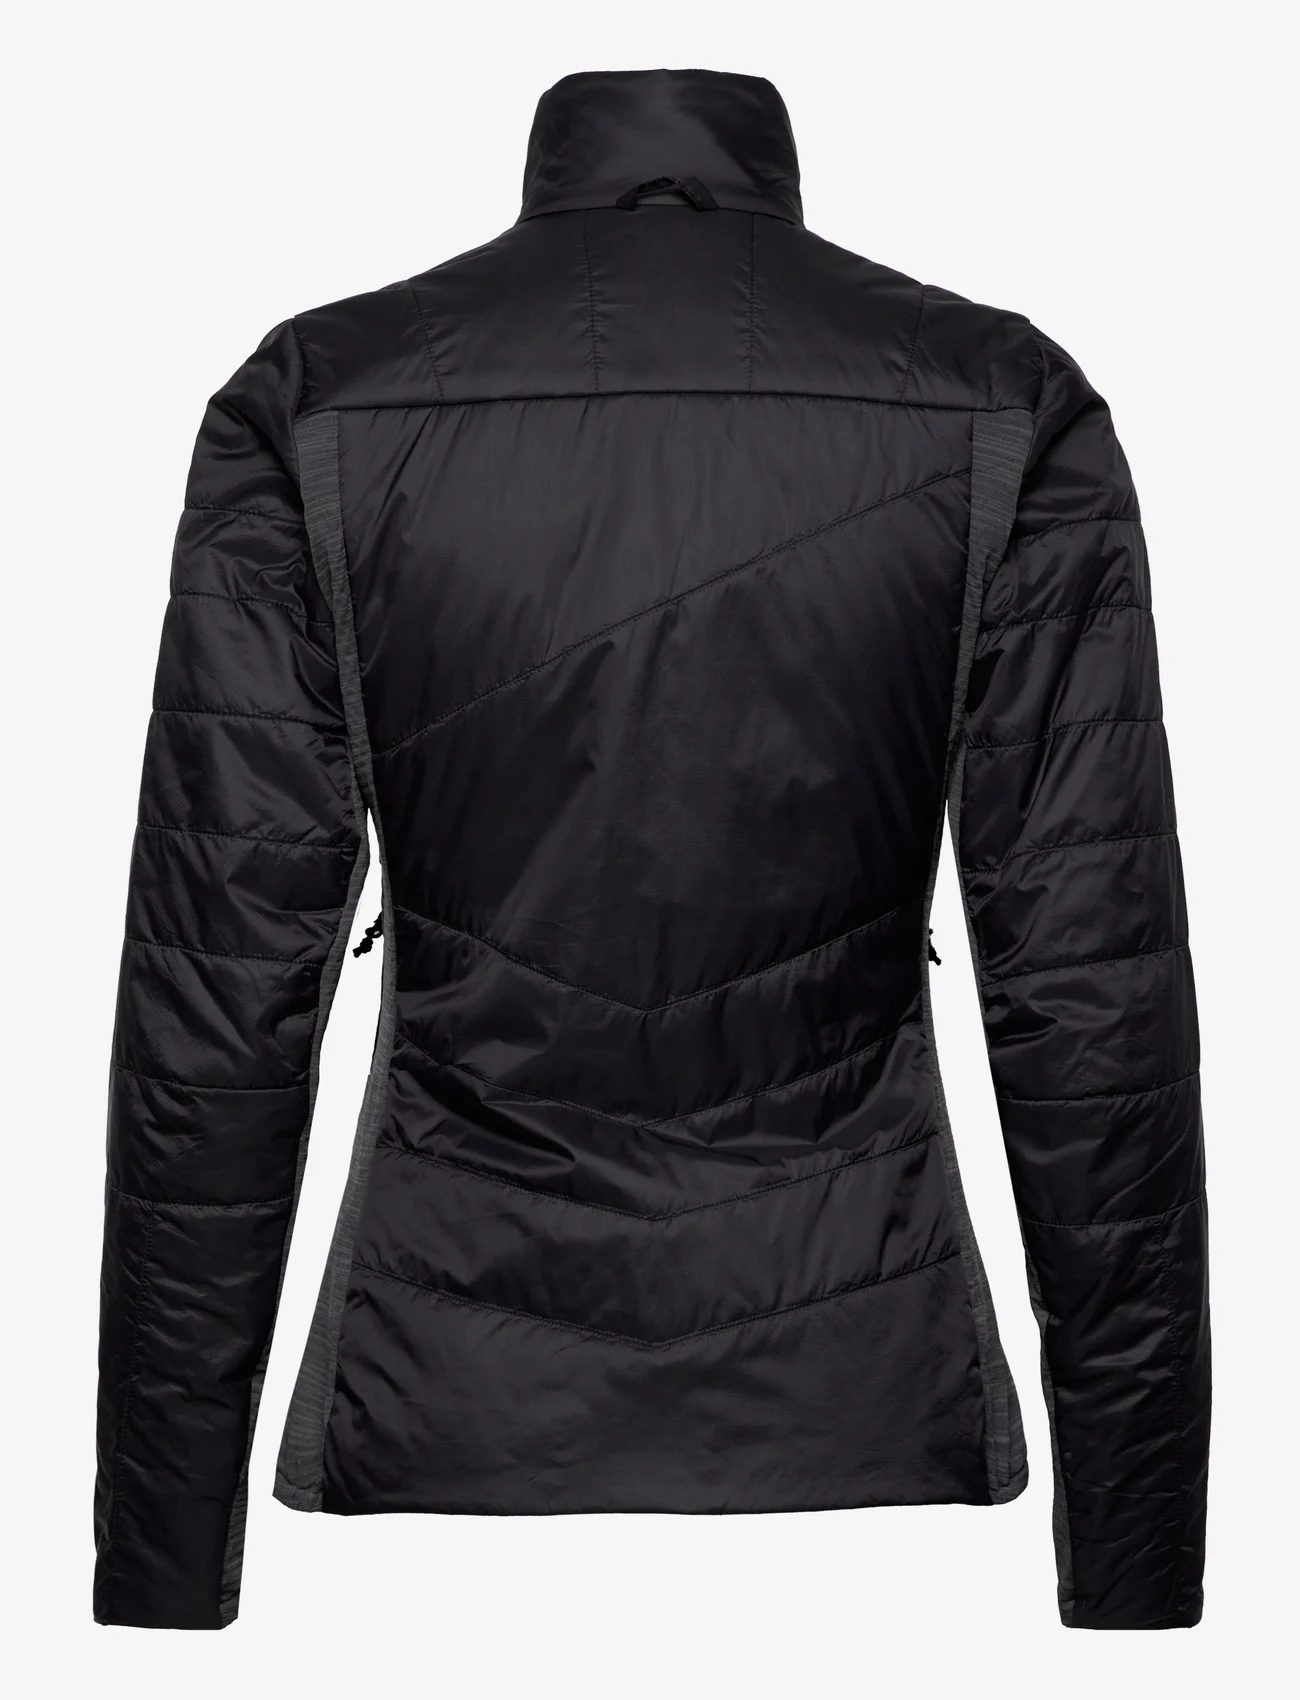 Bergans - Rabot V2 Insulated Hybrid W Jacket - friluftsjackor - black/solid charcoal - 1